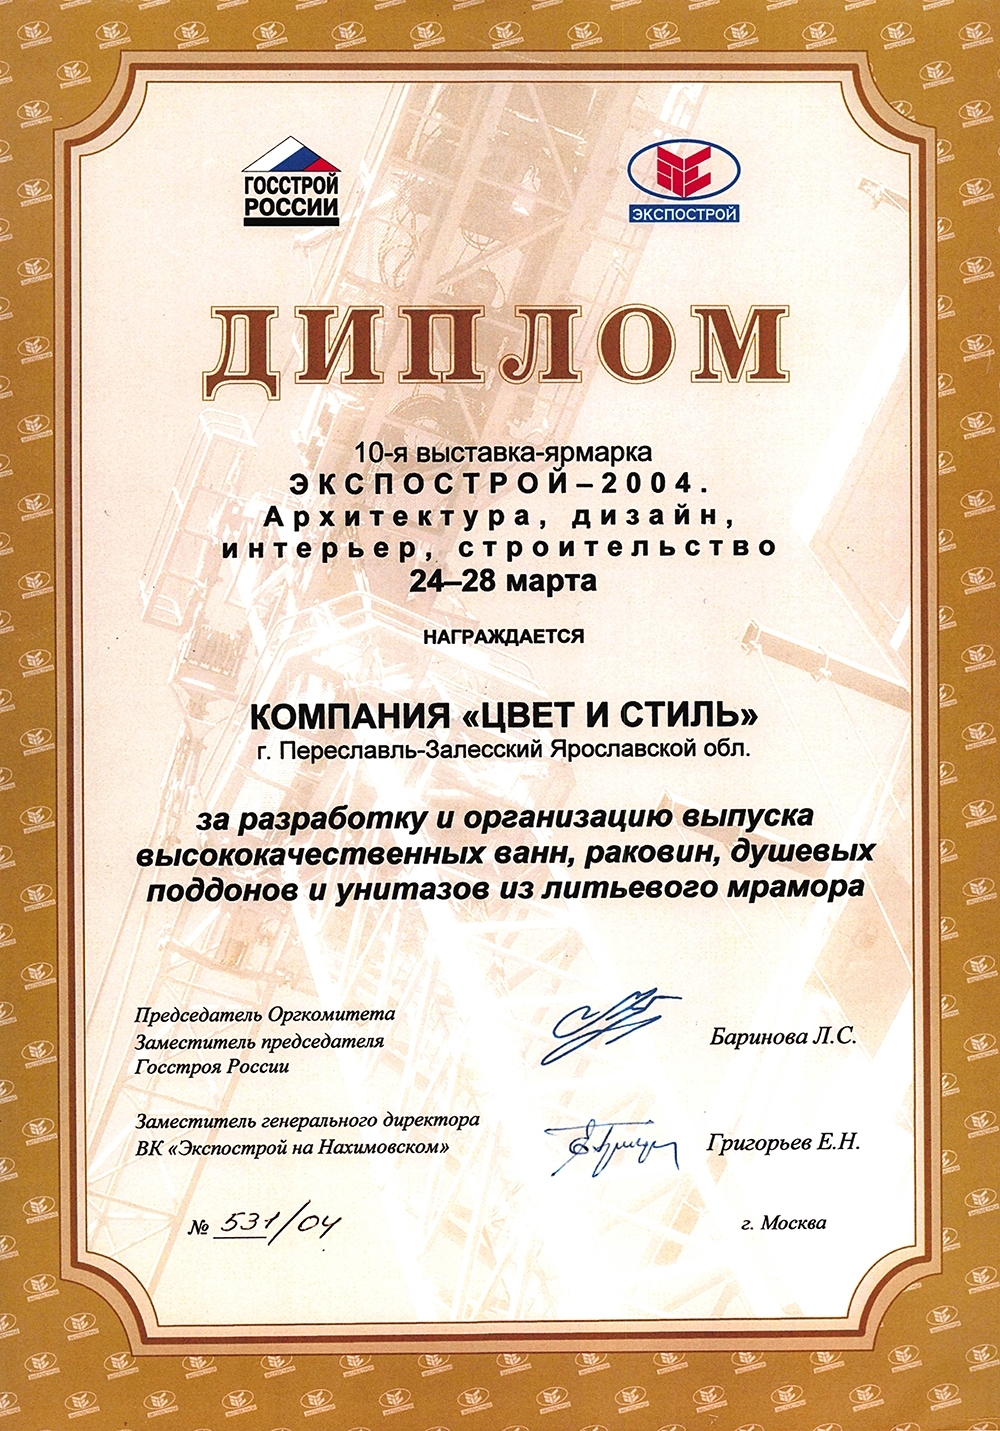 Диплом Экспострой 2004